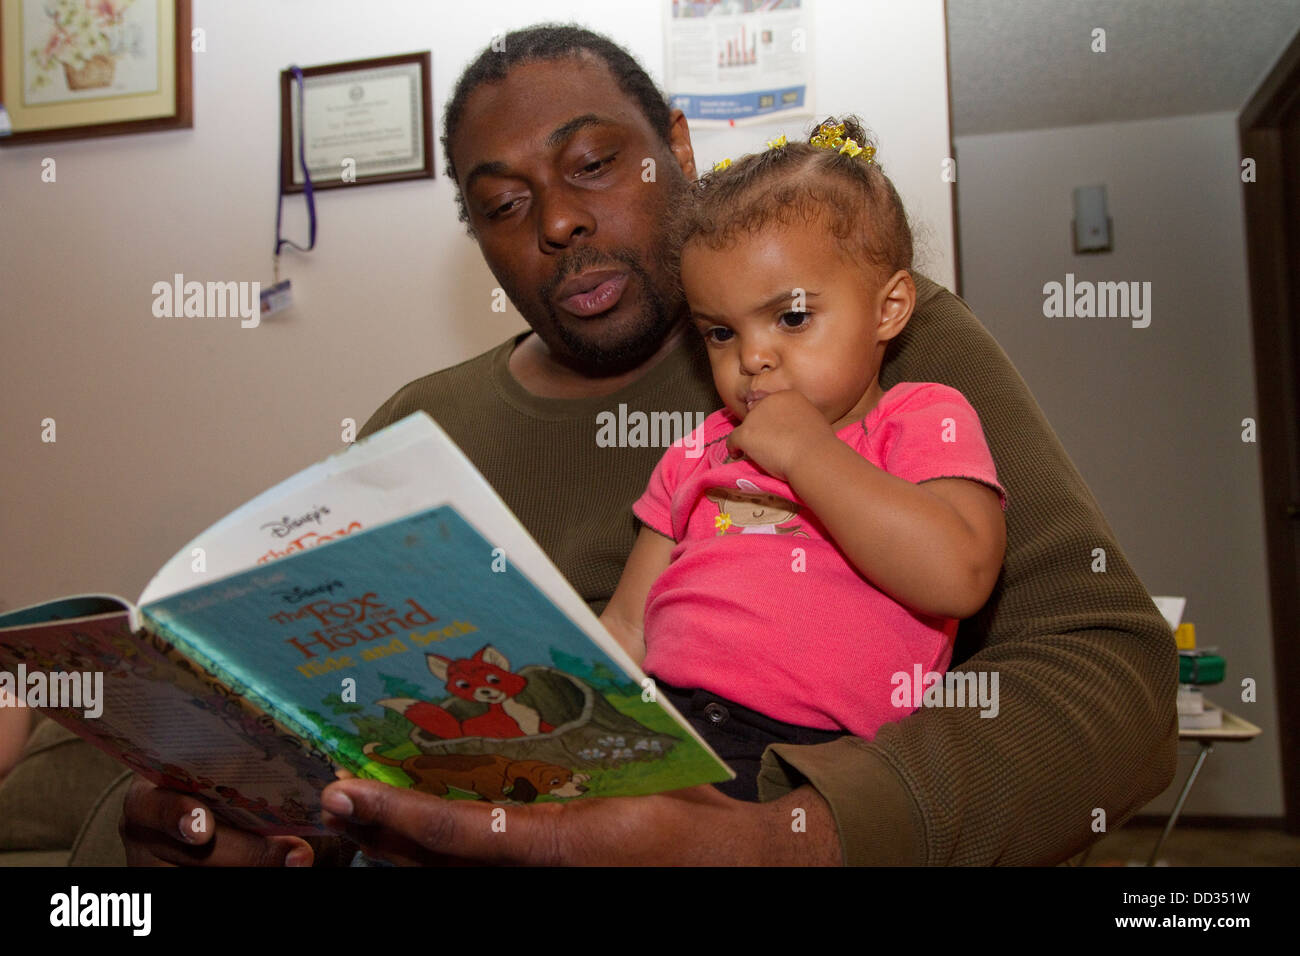 Afrikanisch-amerikanischen männlichen ehemaliger Häftling, seine junge Tochter zu lesen. Dieser Häftling gelang es, einen Abschluss nach seiner Entlassung zu erhalten. Stockfoto